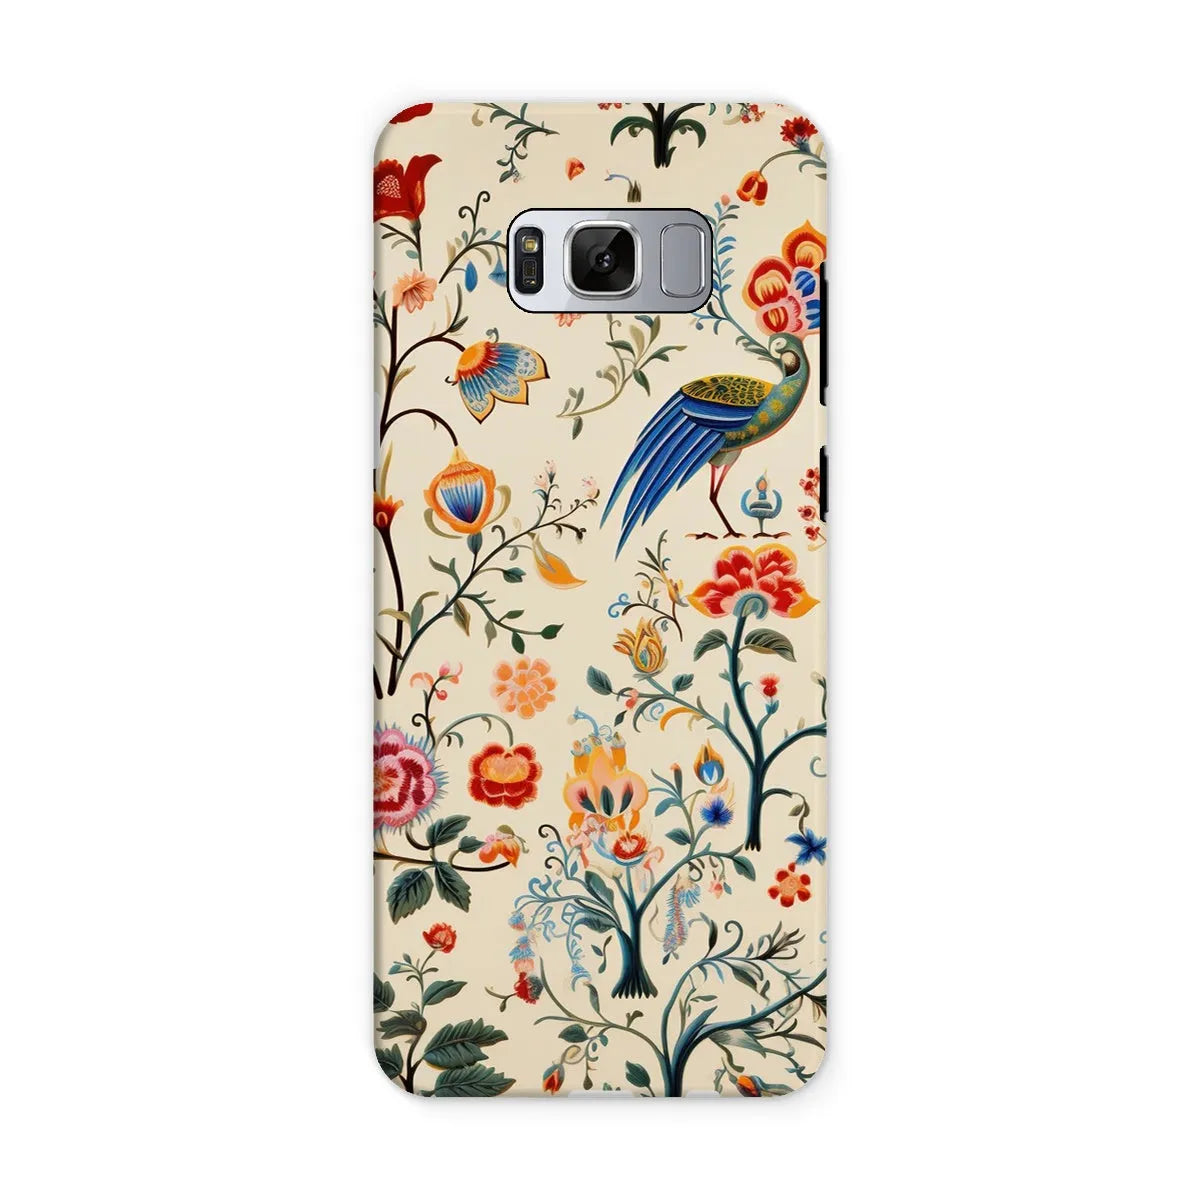 Birdwatchers - Kitsch Bird Art Phone Case - Samsung Galaxy S8 / Matte - Mobile Phone Cases - Aesthetic Art